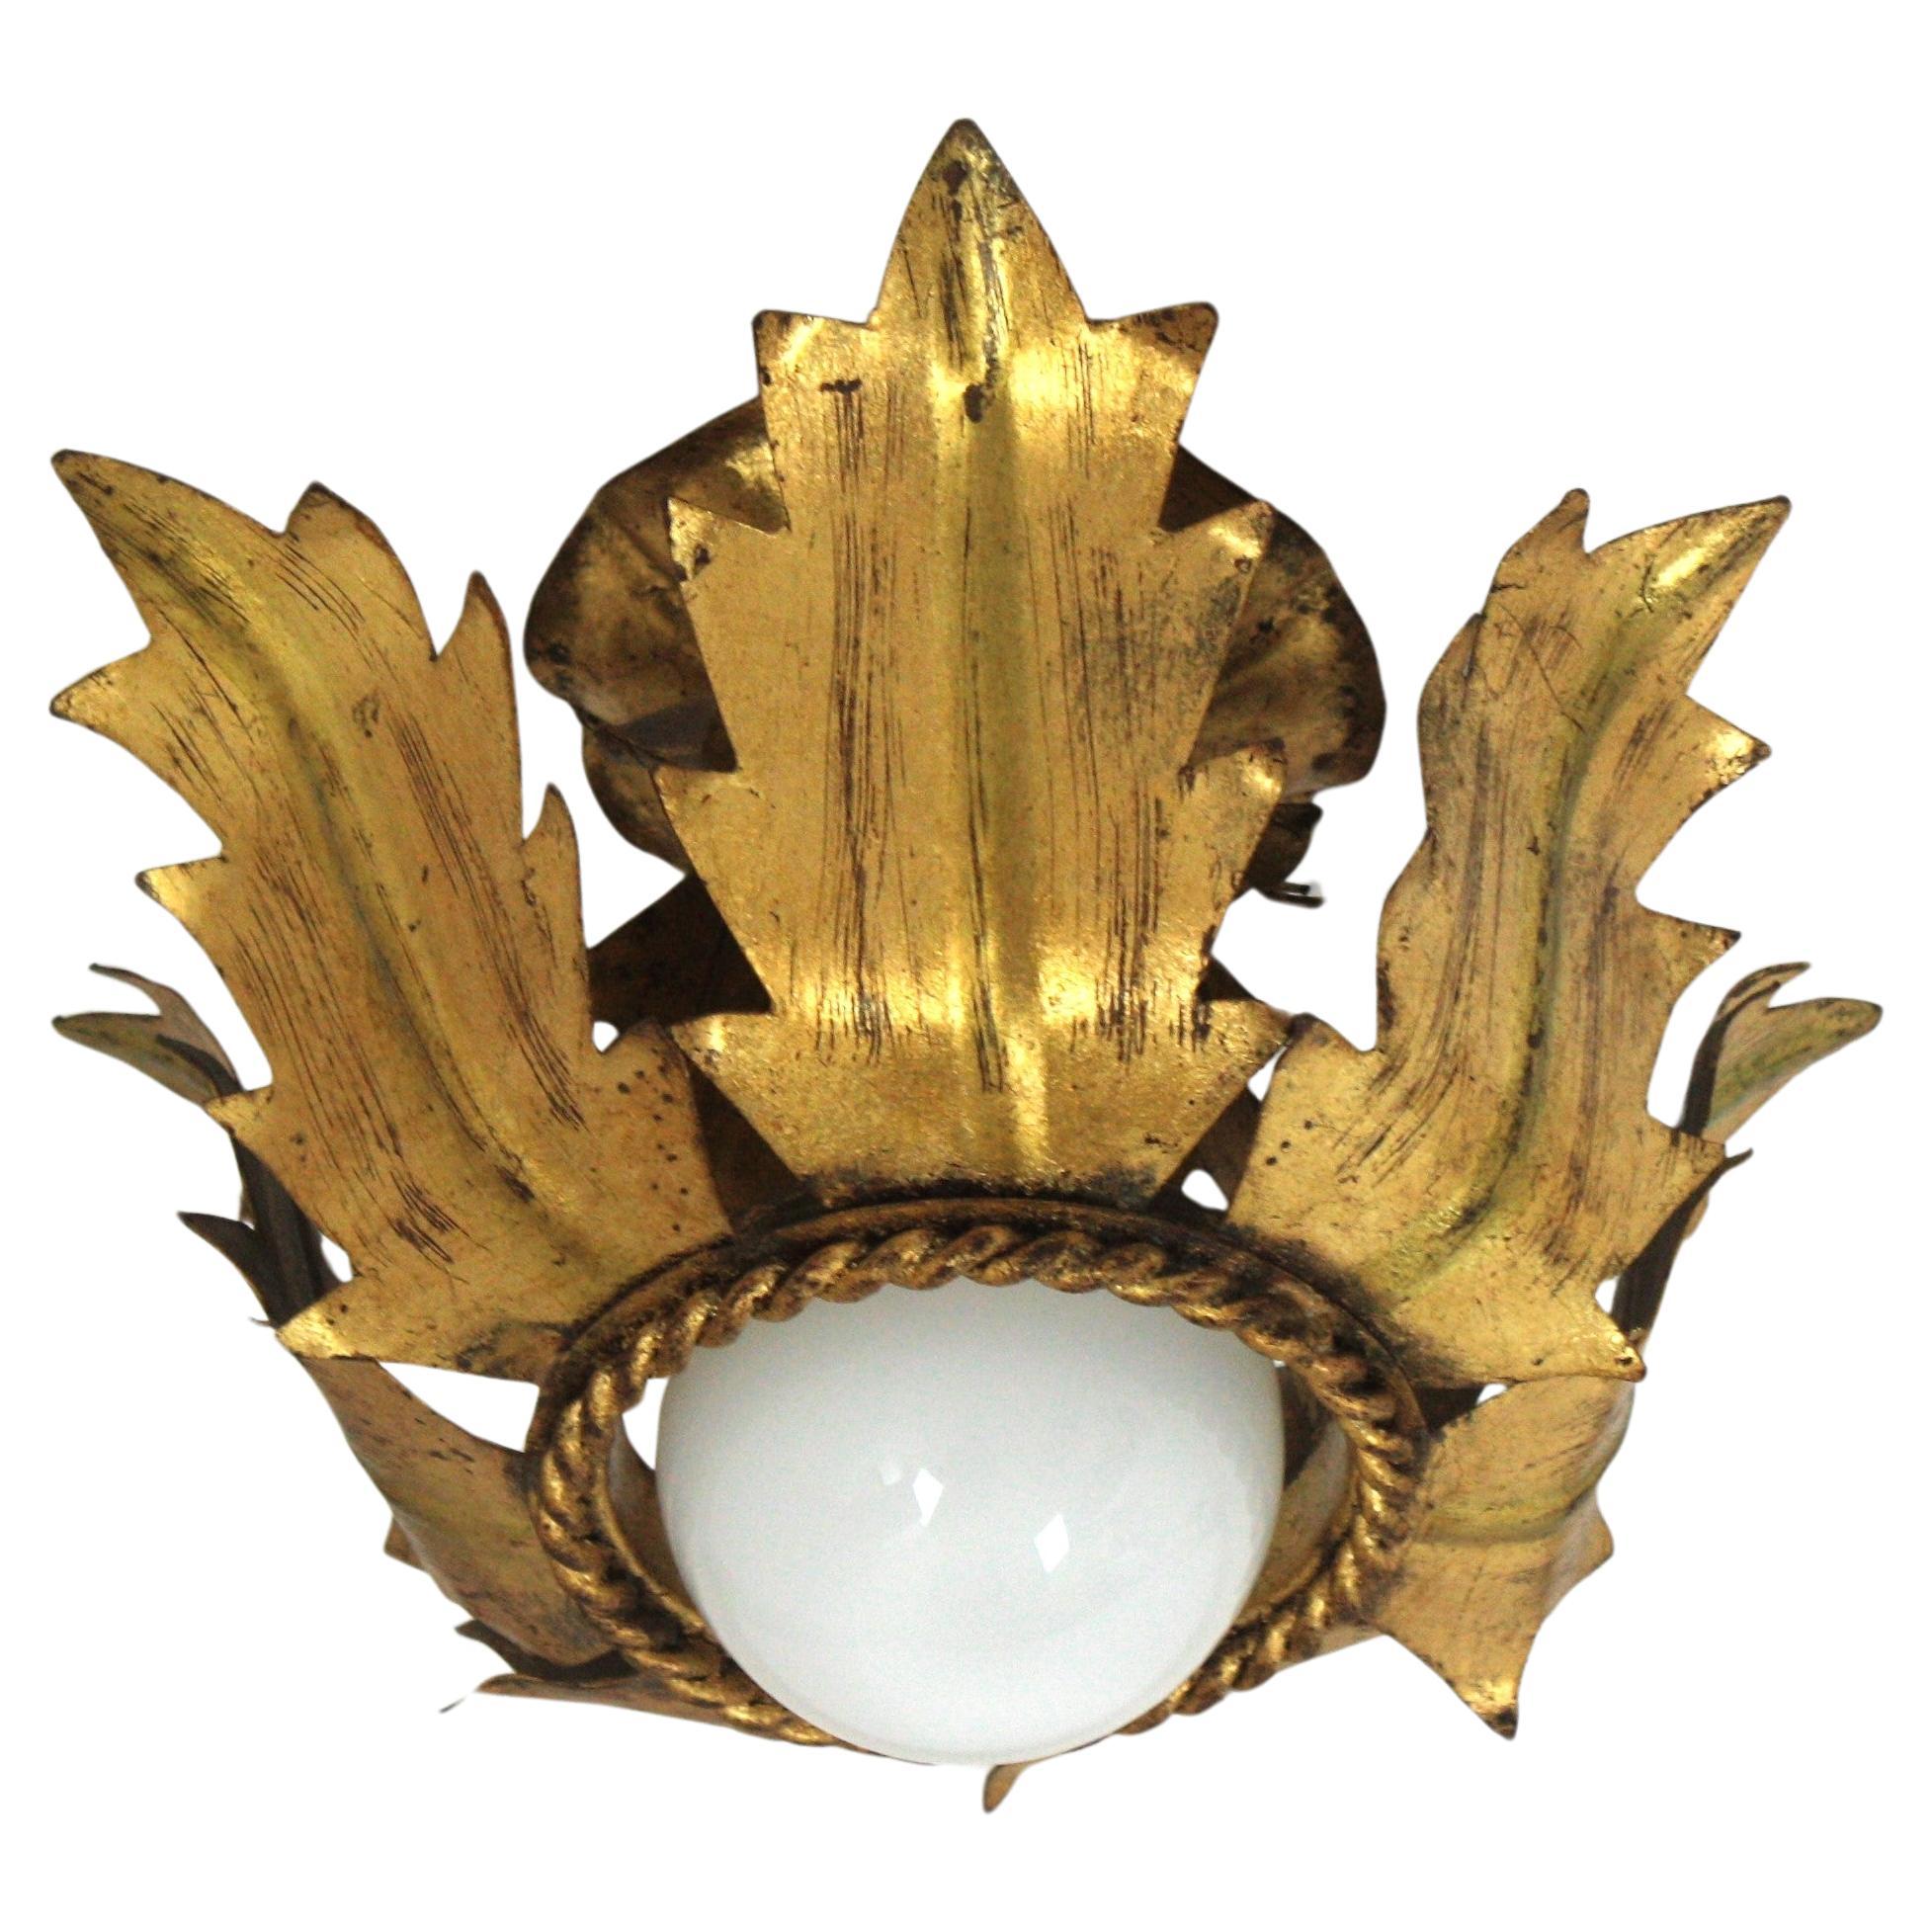 French Flower Bud Sunburst Light Fixture in Gold Leaf Gilt Iron